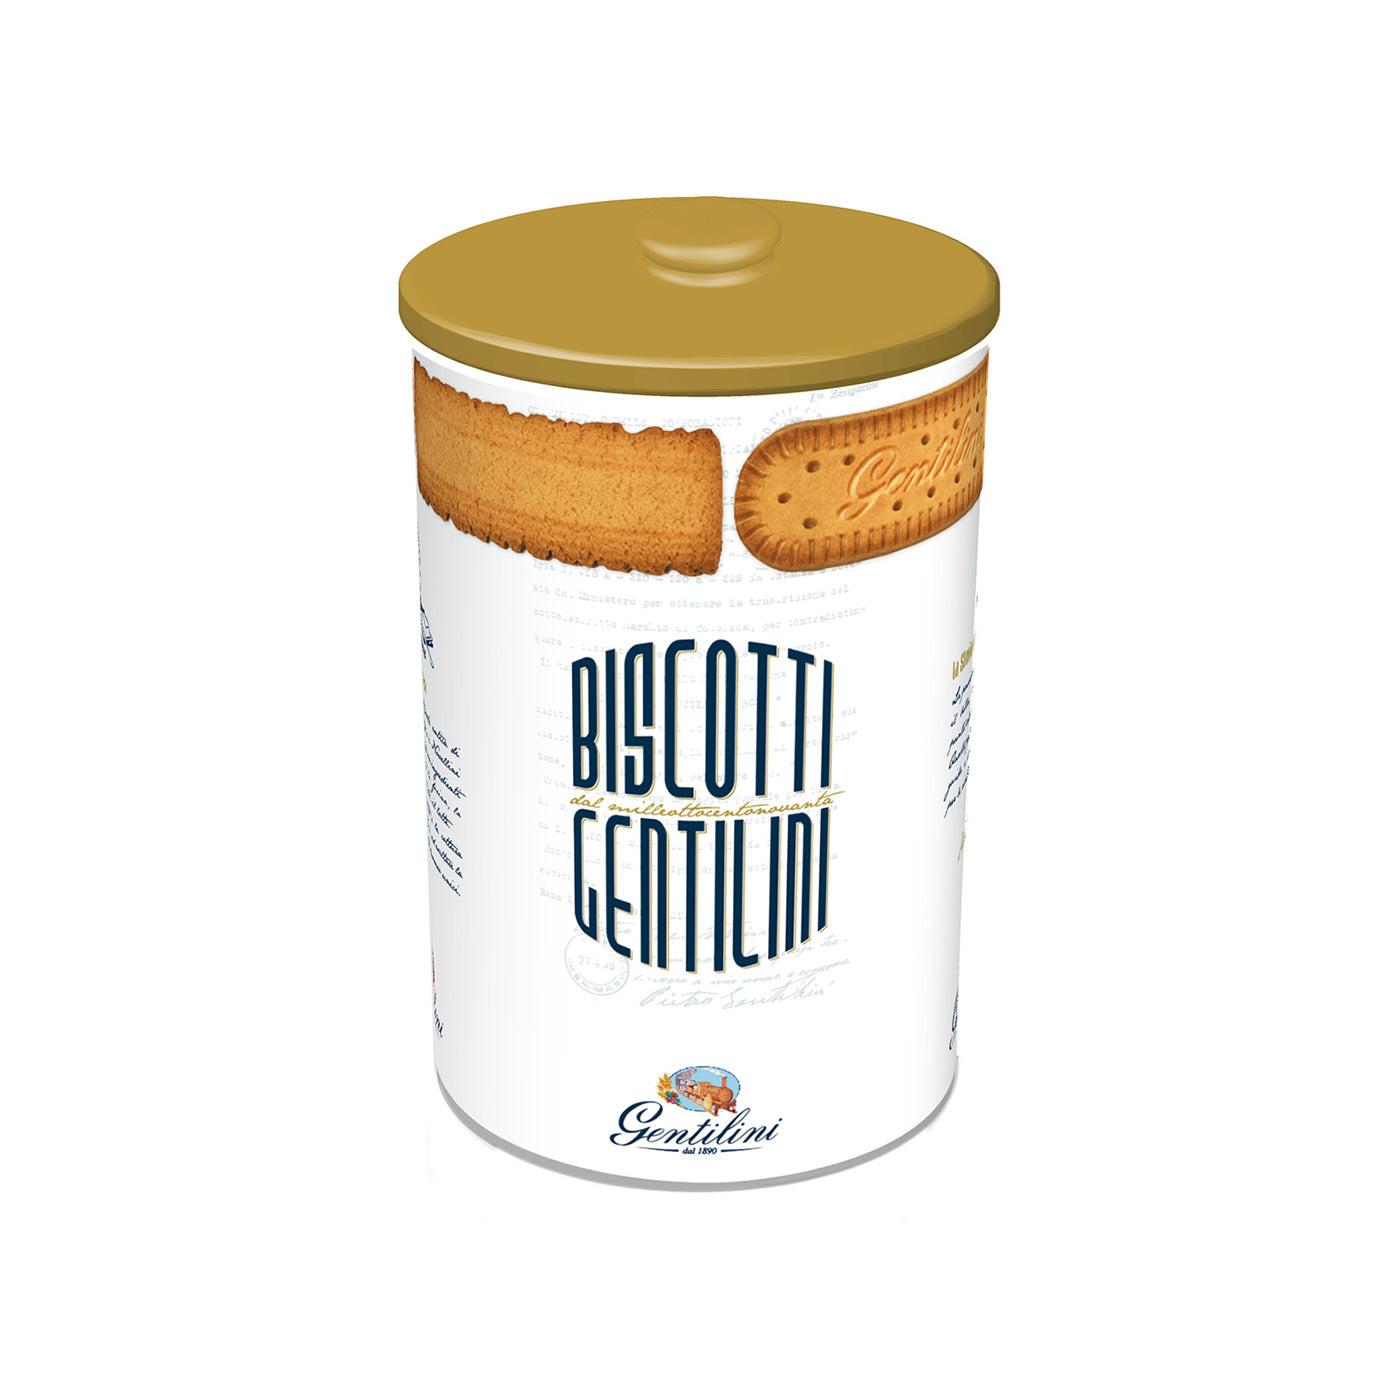 Vendita online biscotti Gentilini 125° anniversario confezione